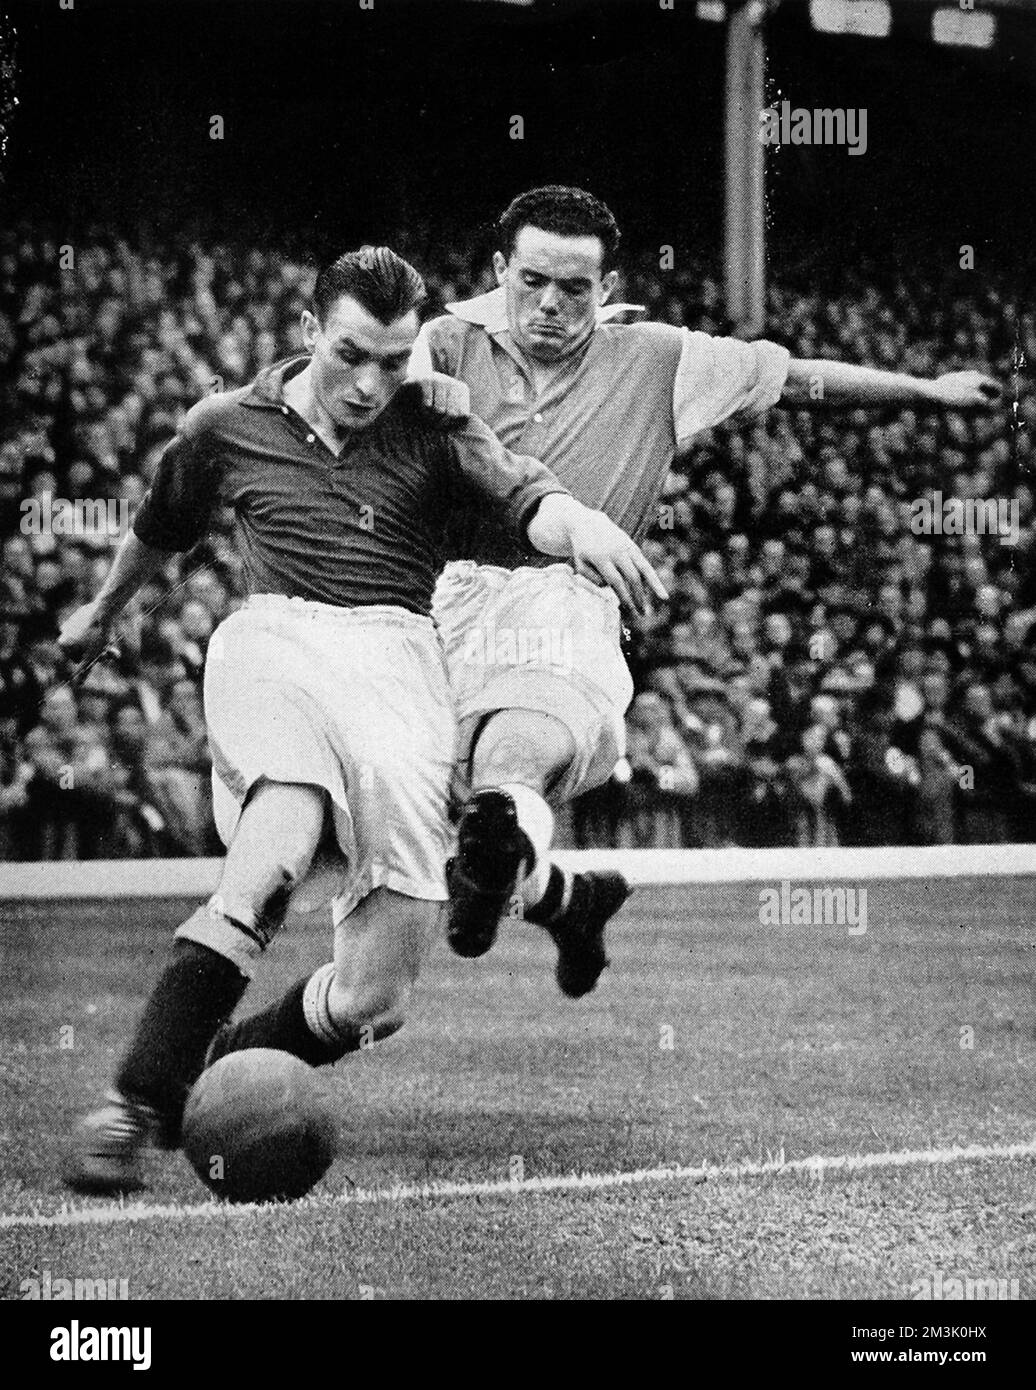 Bryn Jones of Arsenal (a destra) Tacking Gillick of Everton, durante il primo incontro di divisione giocato ad Highbury, Londra, il 1938 settembre. Jones ha segnato per l'Arsenale, ma Everton ha vinto 2-1. Data: 1938 Foto Stock